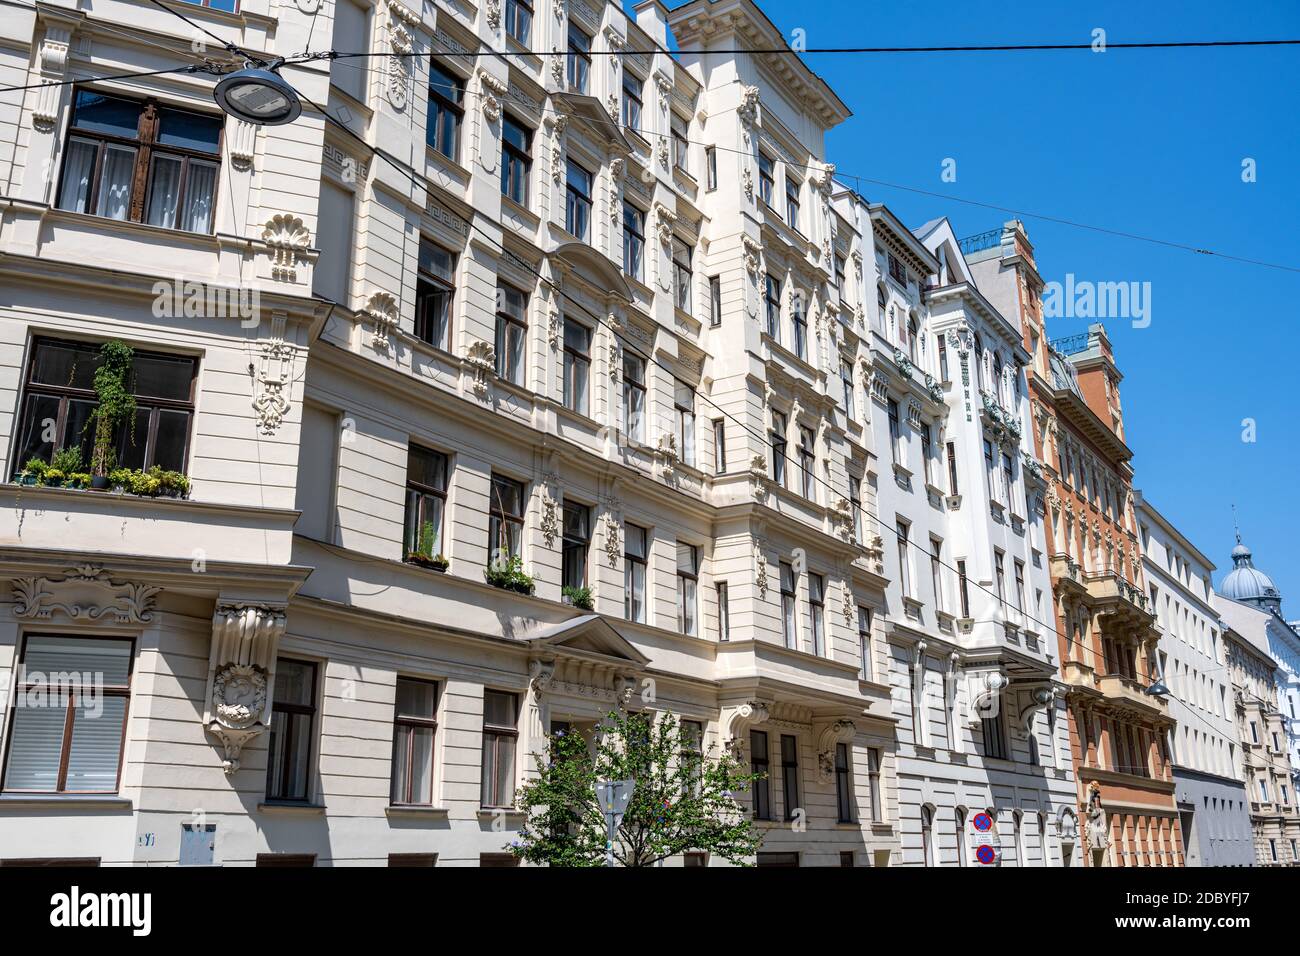 Anciens immeubles d'appartements rénovés vus à Vienne, Autriche Banque D'Images